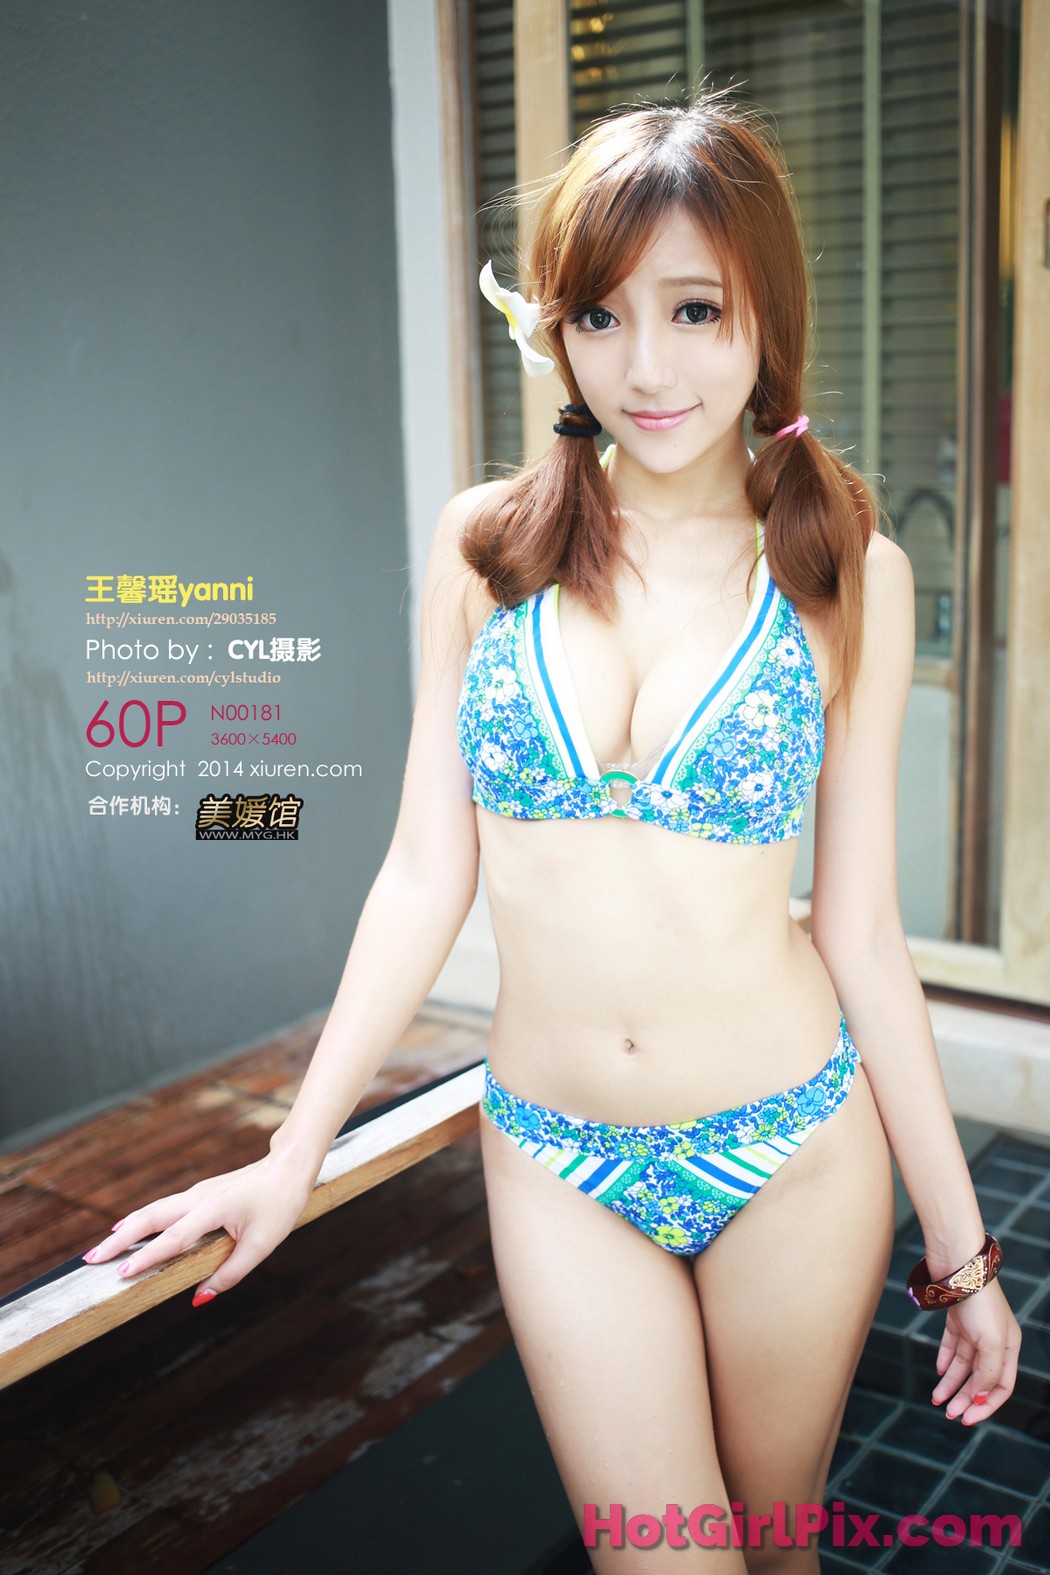 [XIUREN] No.181 Wang Xin Yao 王馨瑶yanni Cover Photo